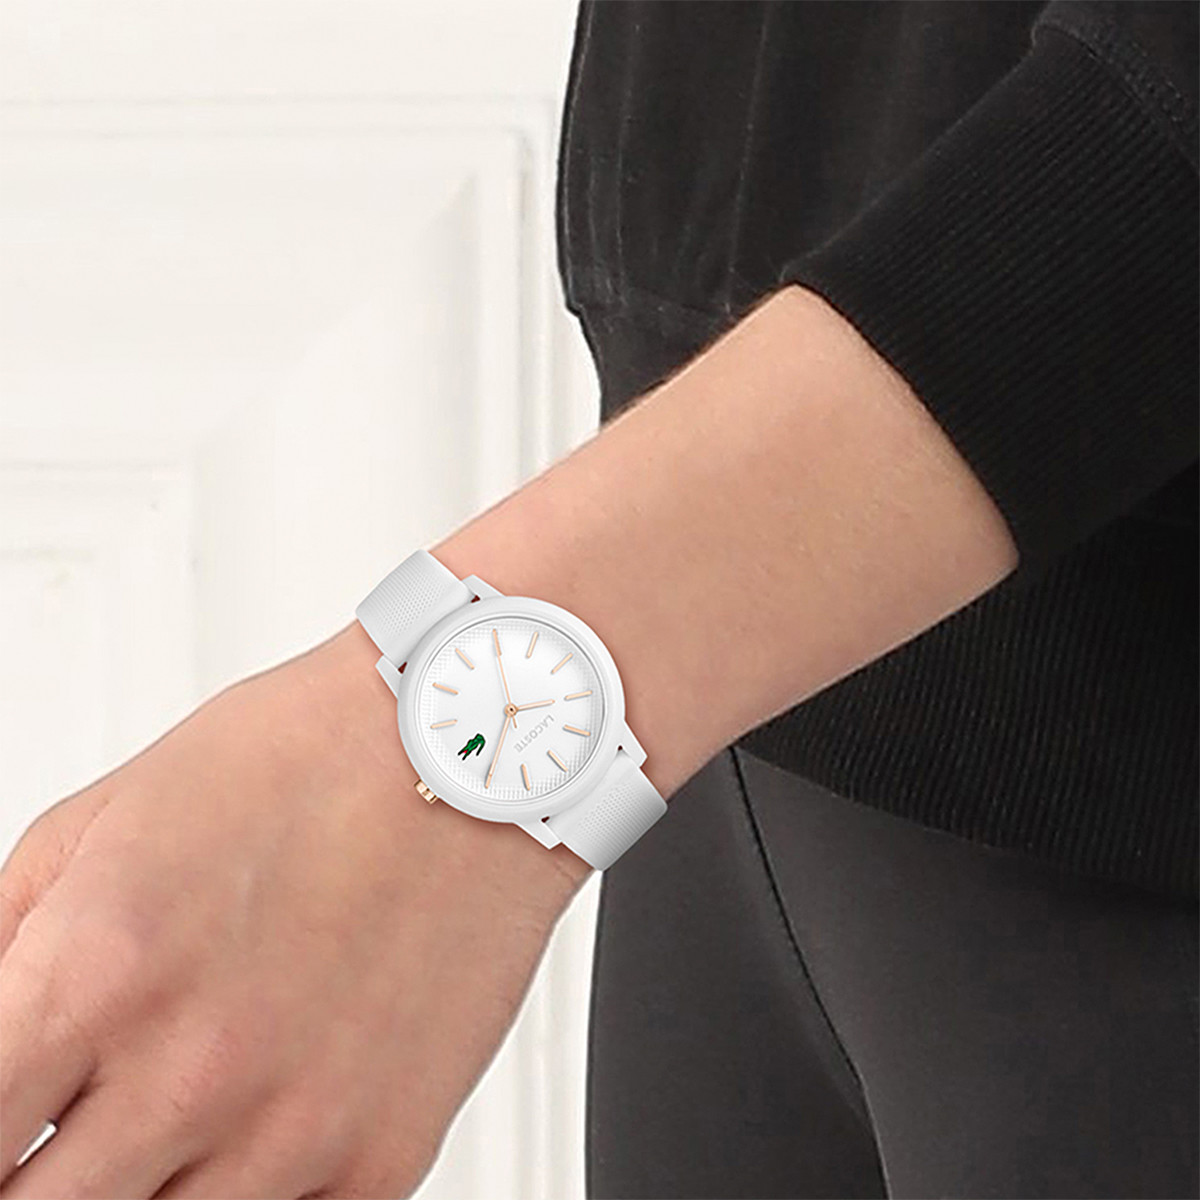 Montre Lacoste 12.12 femme résine bracelet silicone blanc - vue porté 1